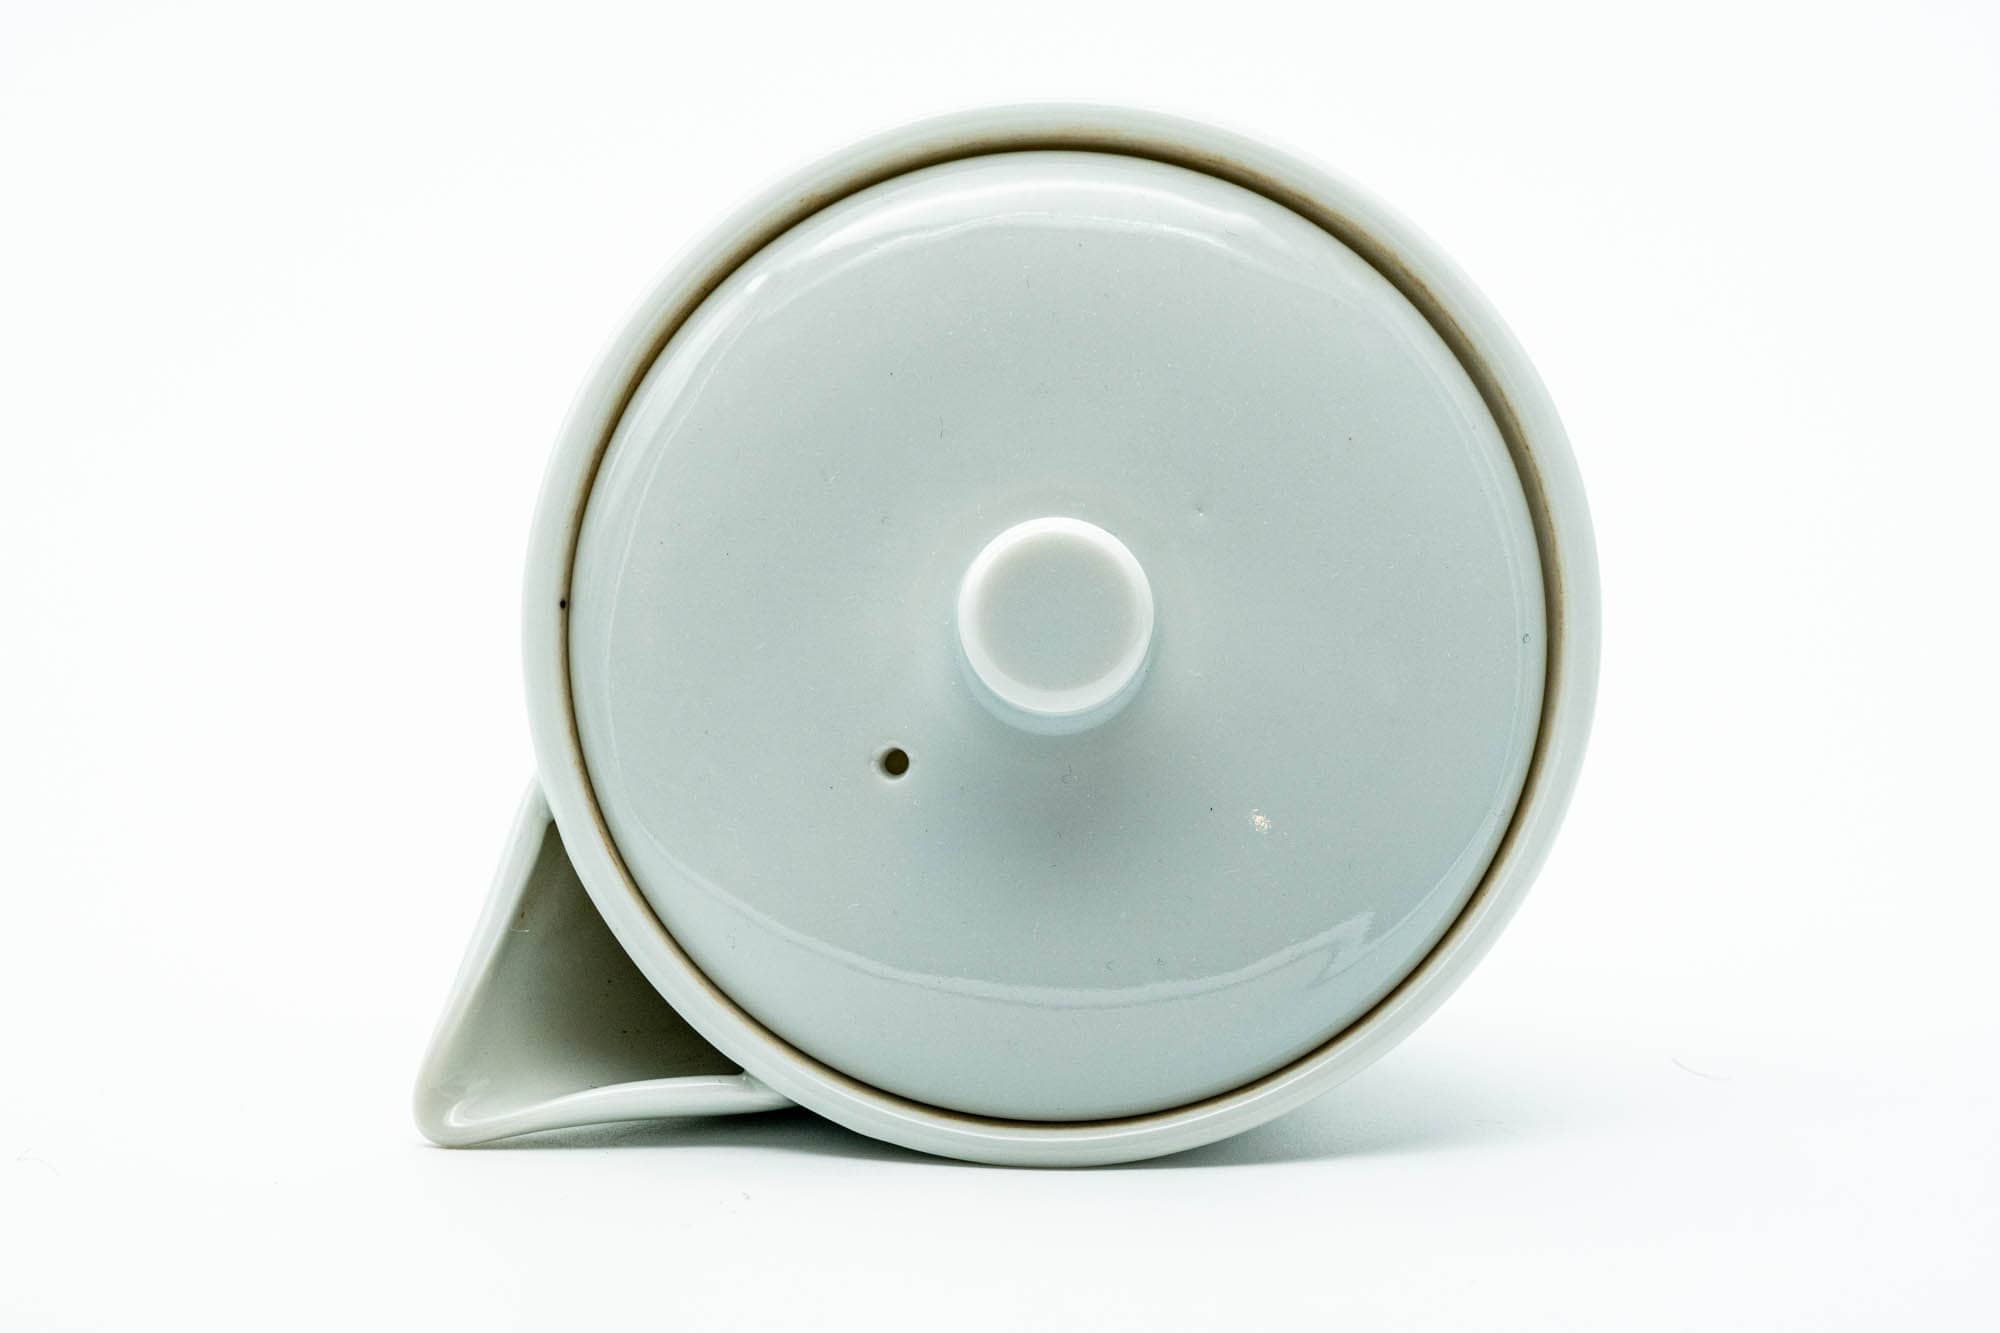 Japanese Houhin - White Porcelain Arita-yaki Ceramic Filter Teapot - 140ml